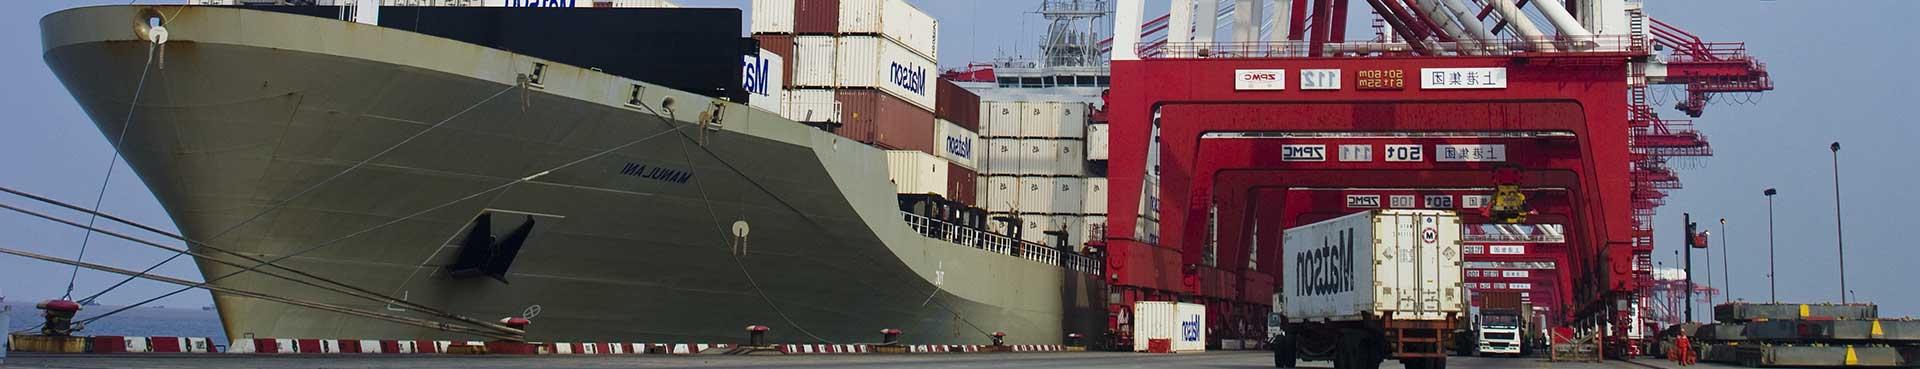 澳博体育app下载集装箱船Manulani在码头准备从中国出发.